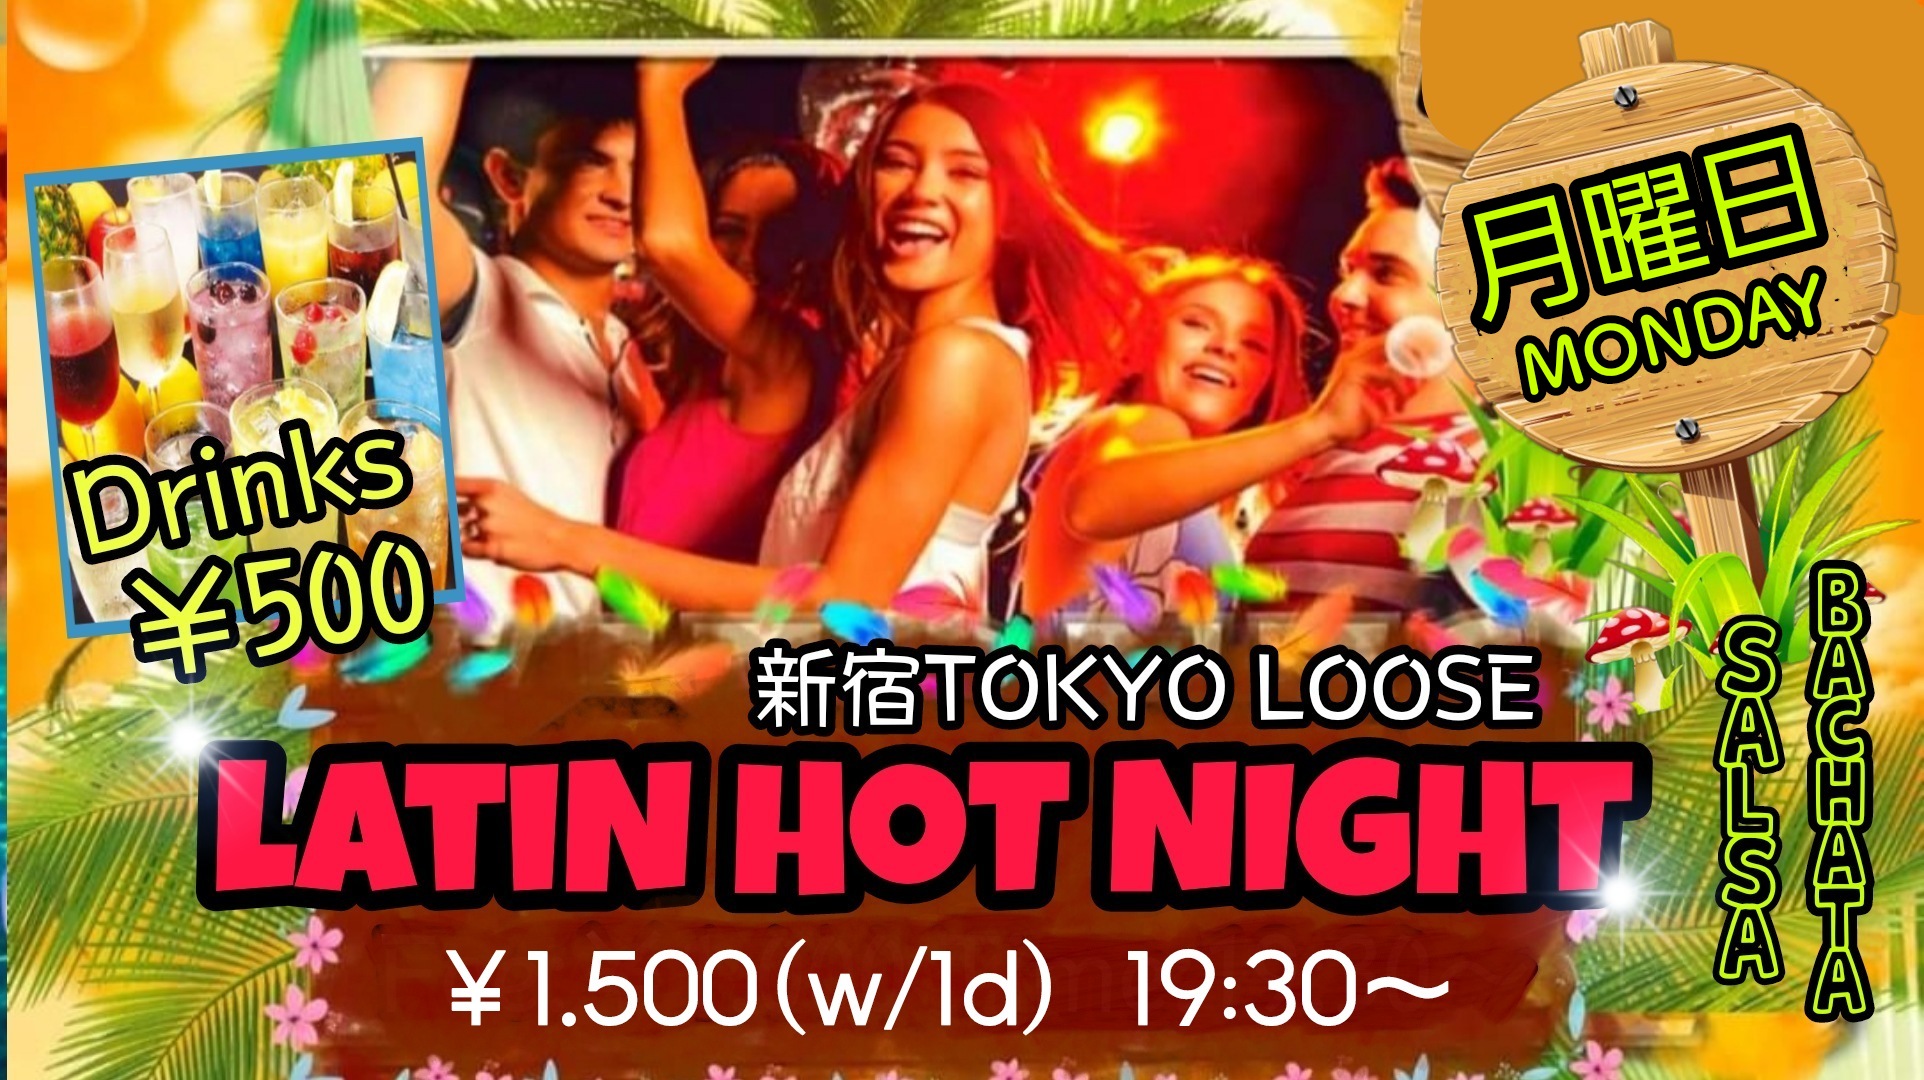 7/4(月)LATIN HOT NIGHT@新宿Tokyo Loose